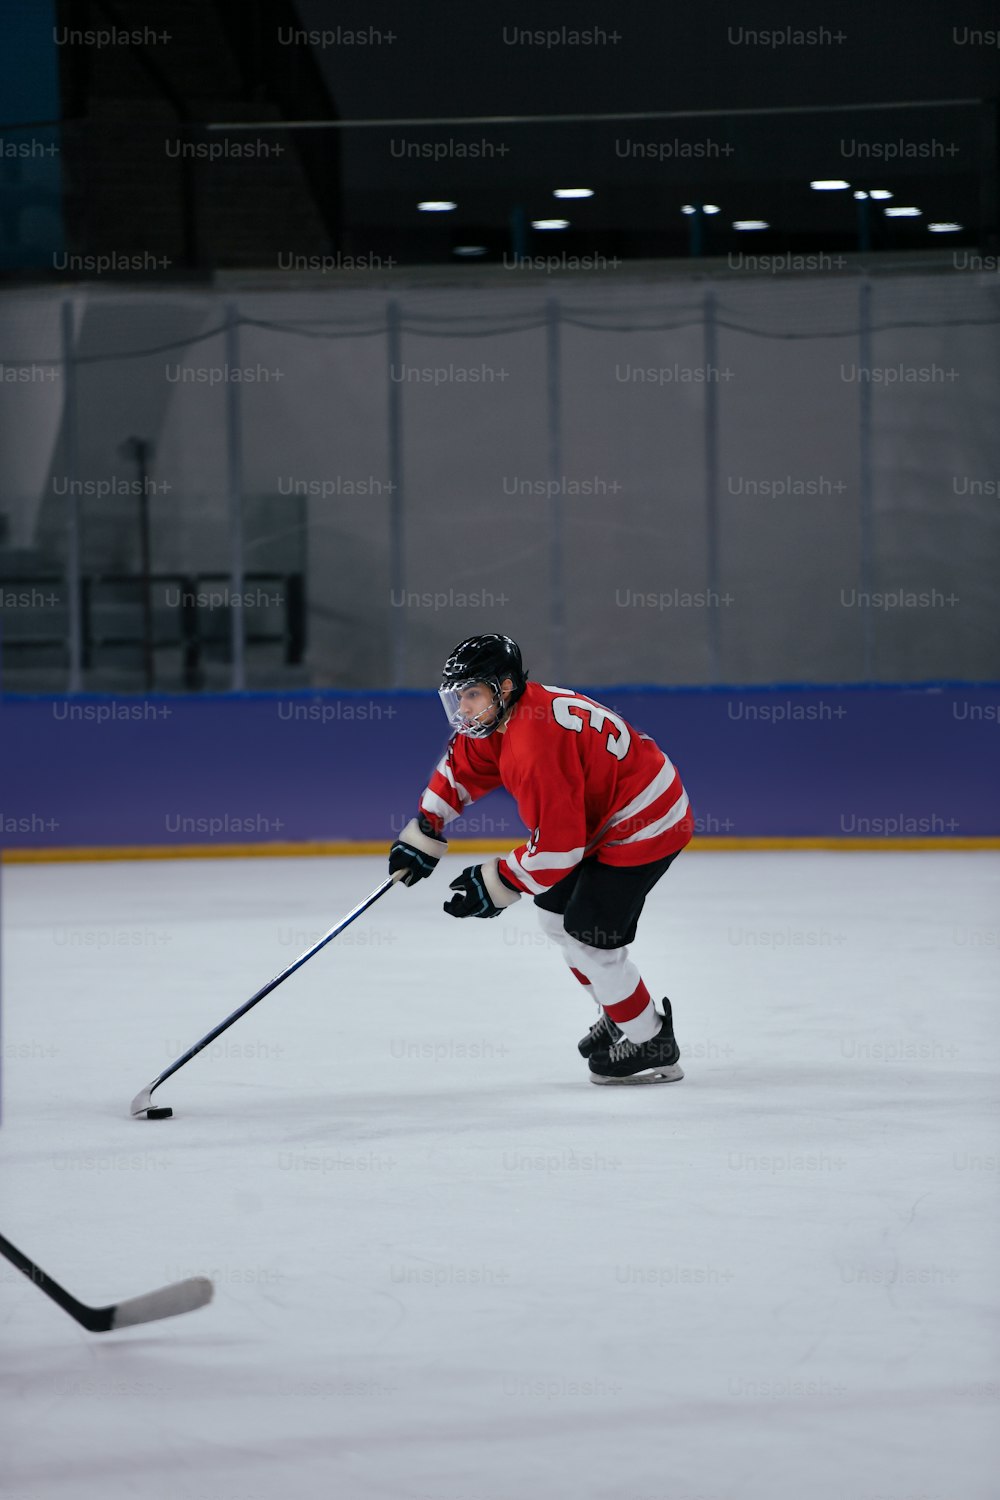 Un homme en maillot rouge patinant sur une patinoire